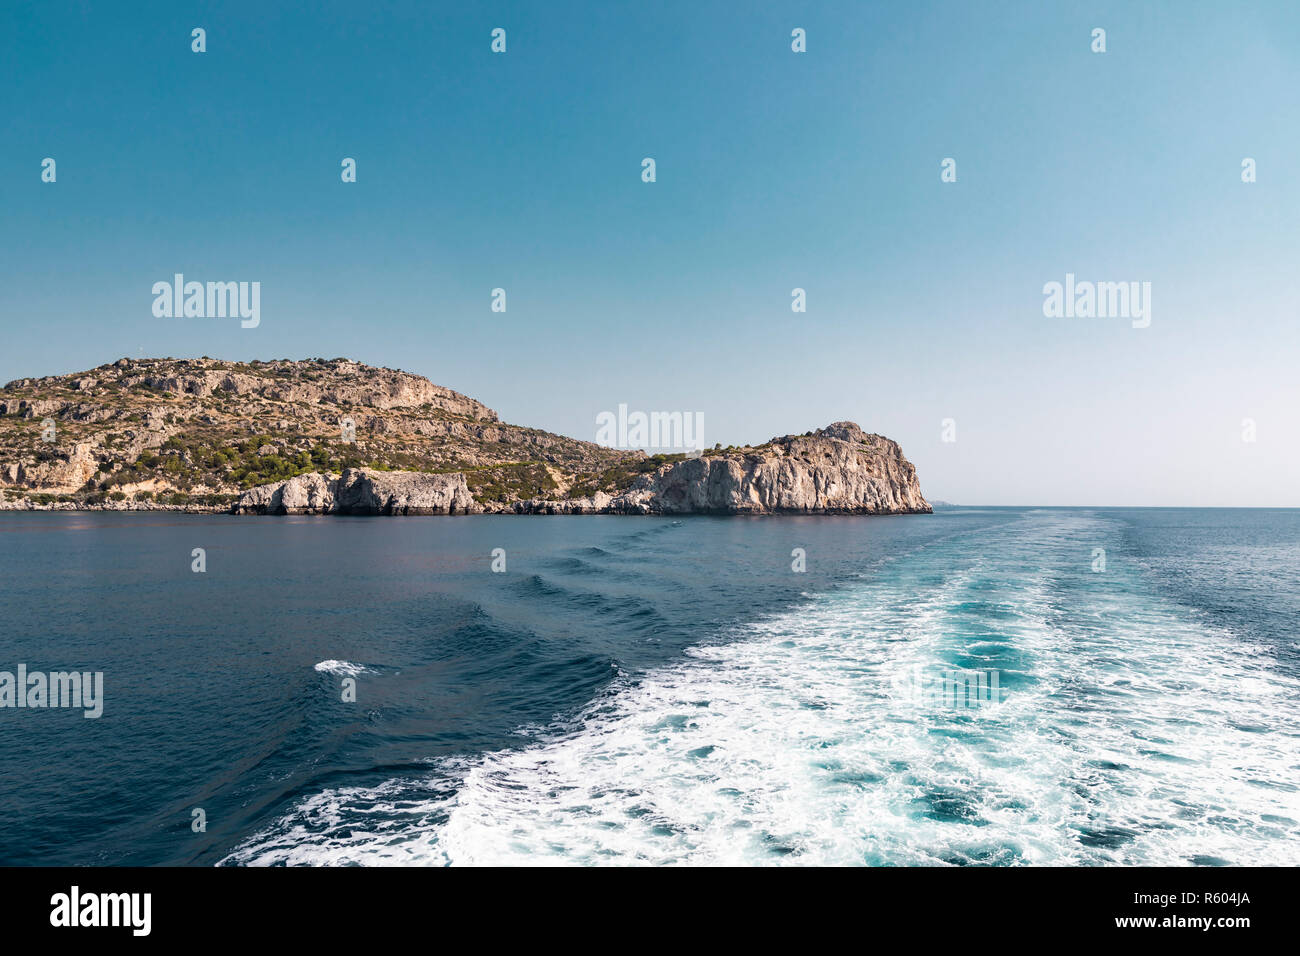 Blick auf die Insel Rhodos in Griechenland, vom Meer mit dem Boot Pfad im Wasser. Stockfoto